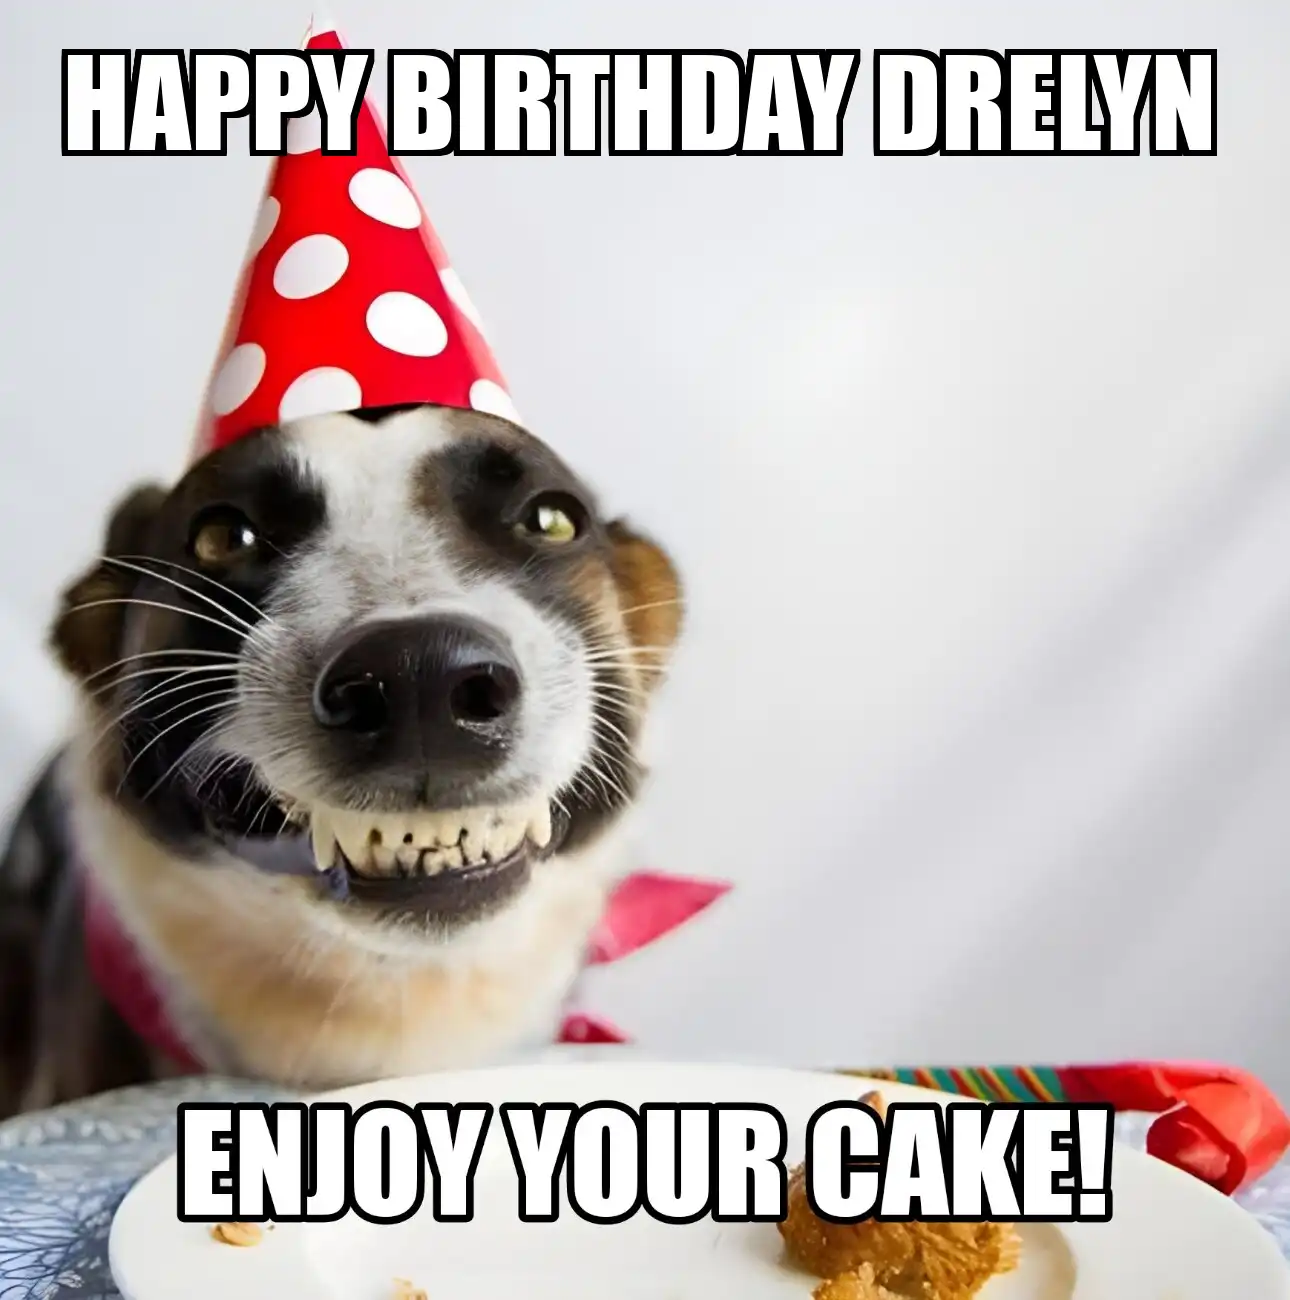 Happy Birthday Drelyn Enjoy Your Cake Dog Meme